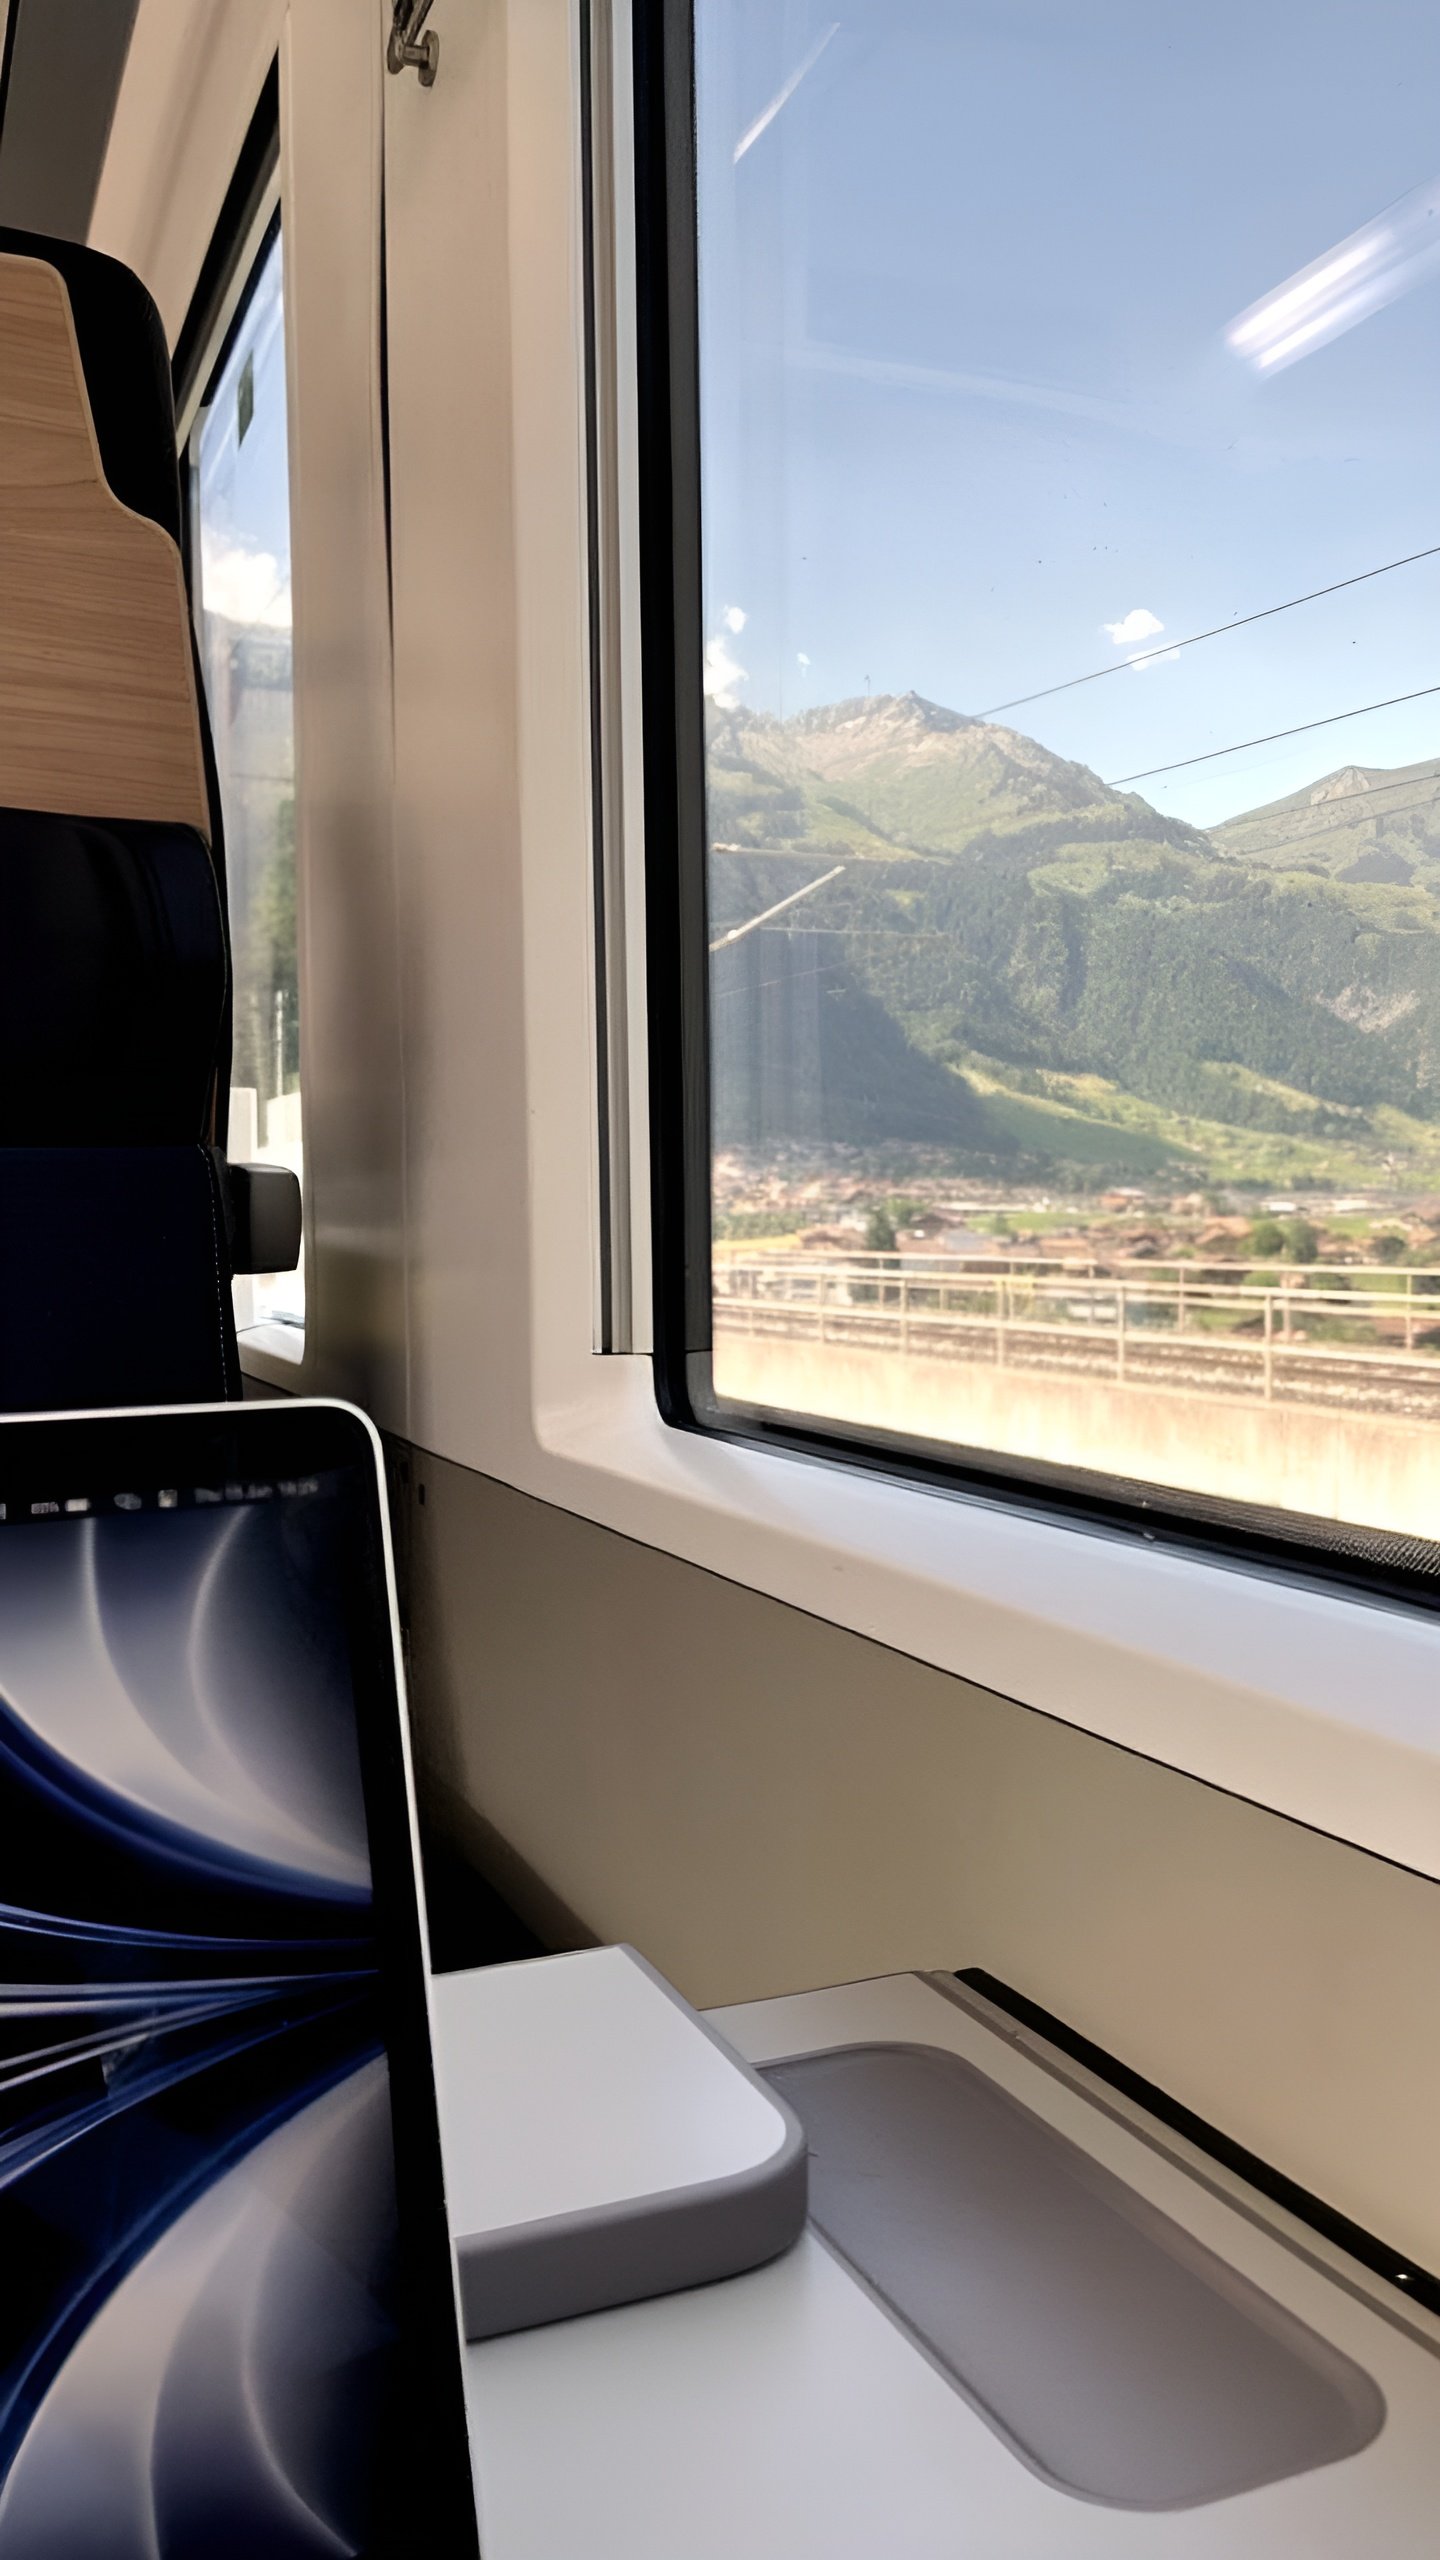 Швейцарский удаленщик выбрал поезда вместо коворкинга: дешевле и красивее